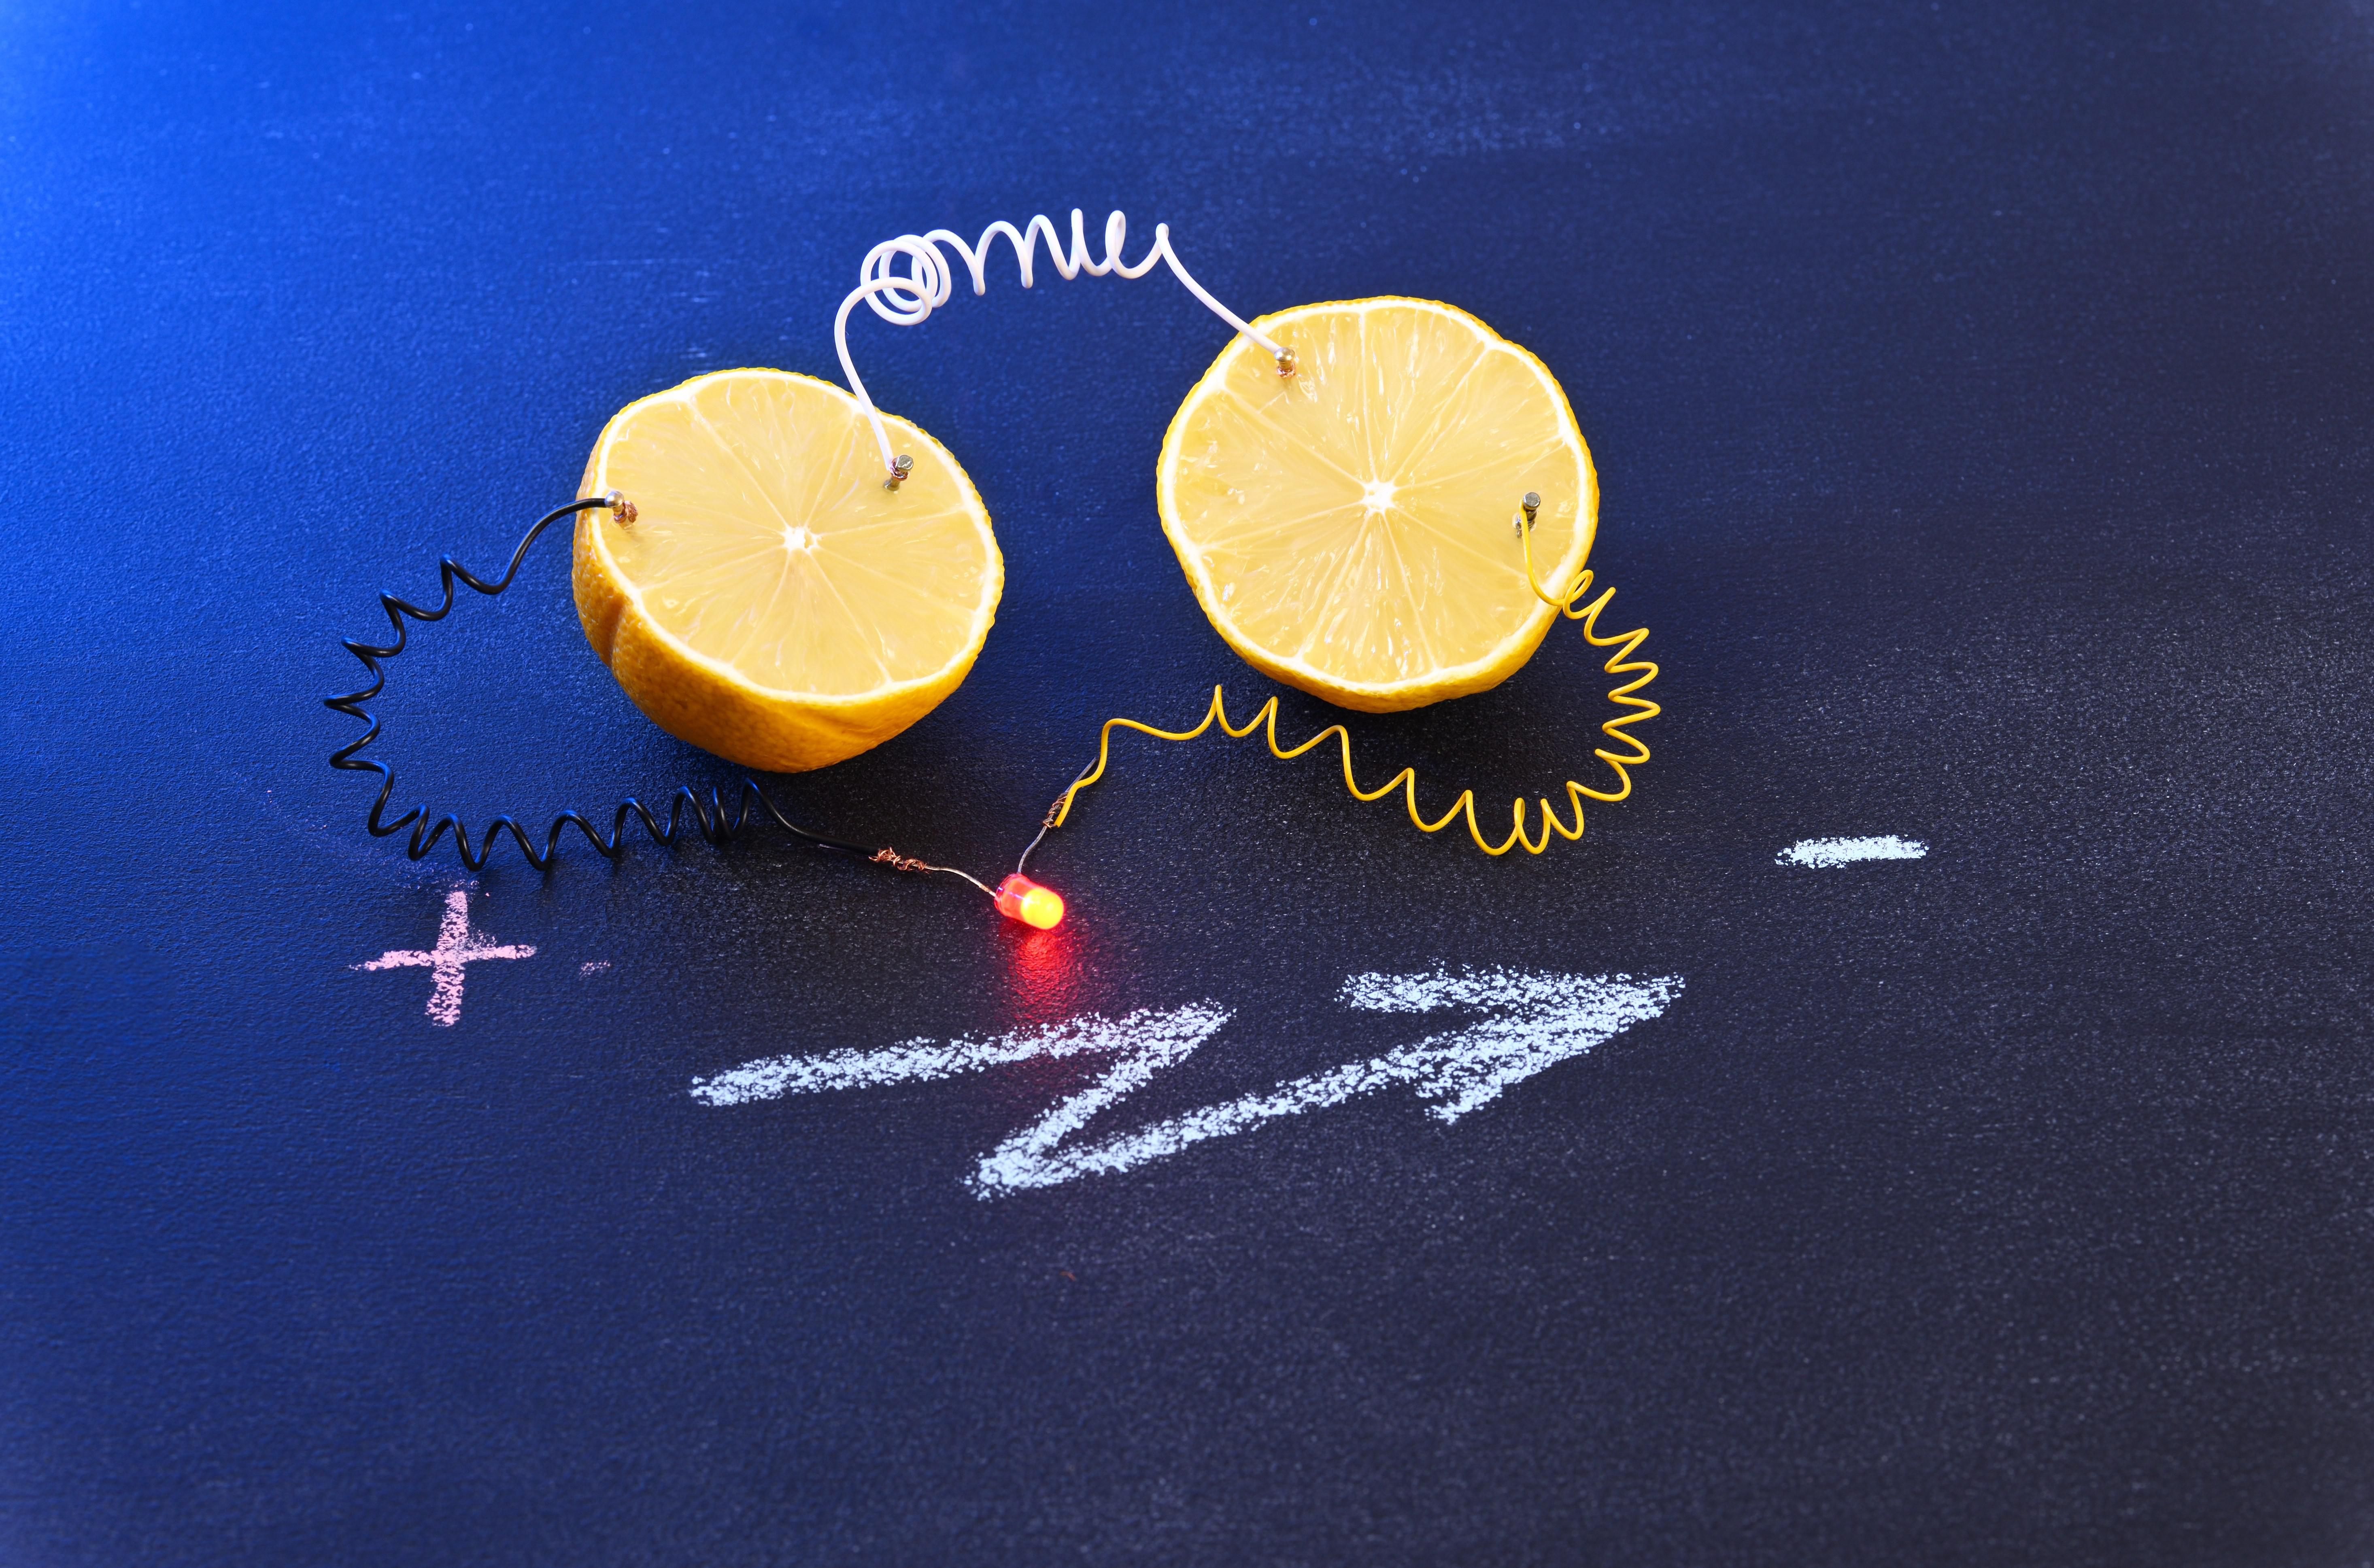 A világ energetikai problémáit a citrom-akkumulátor azonban nem valószínű, hogy meg tudja oldani